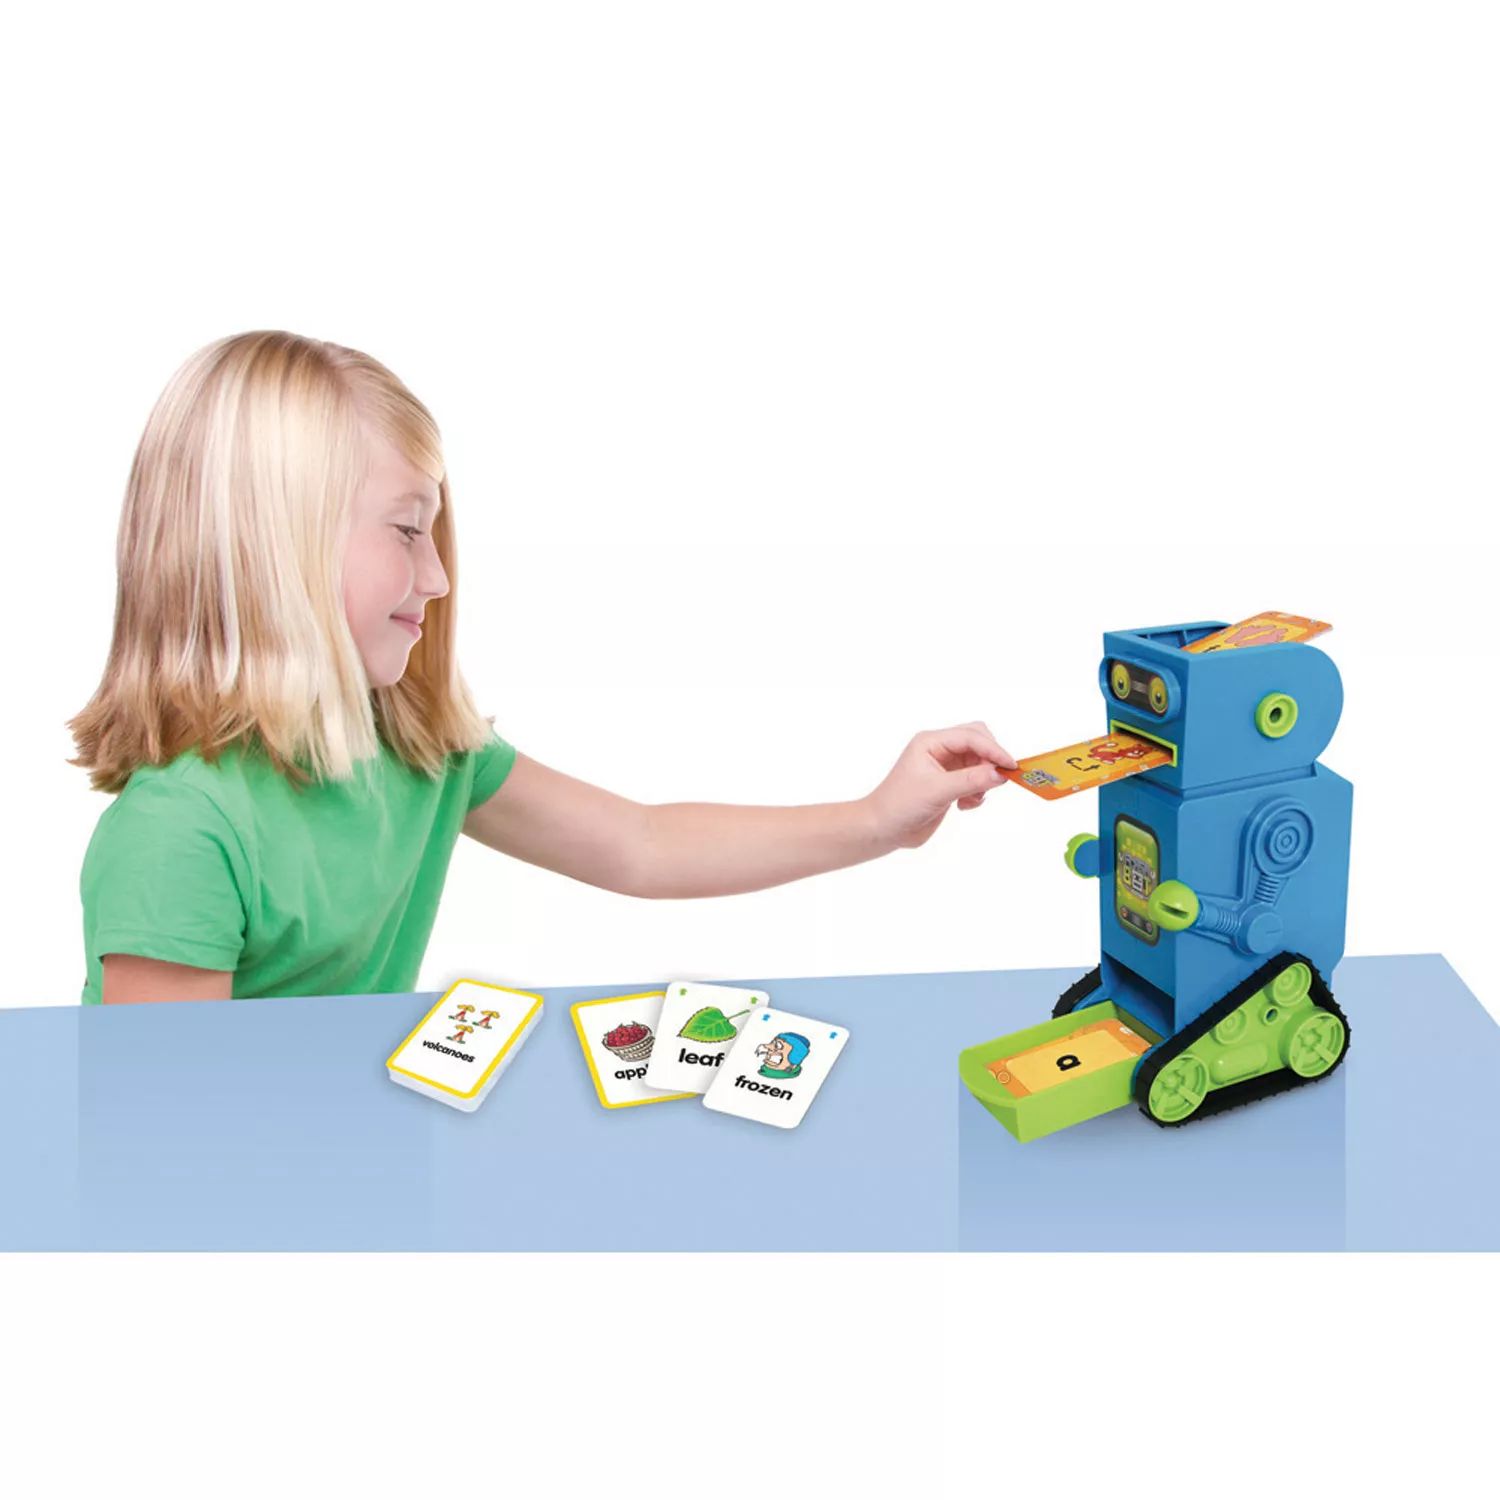 Робот с флэш-картой для младшего обучения Flashbot Junior Learning